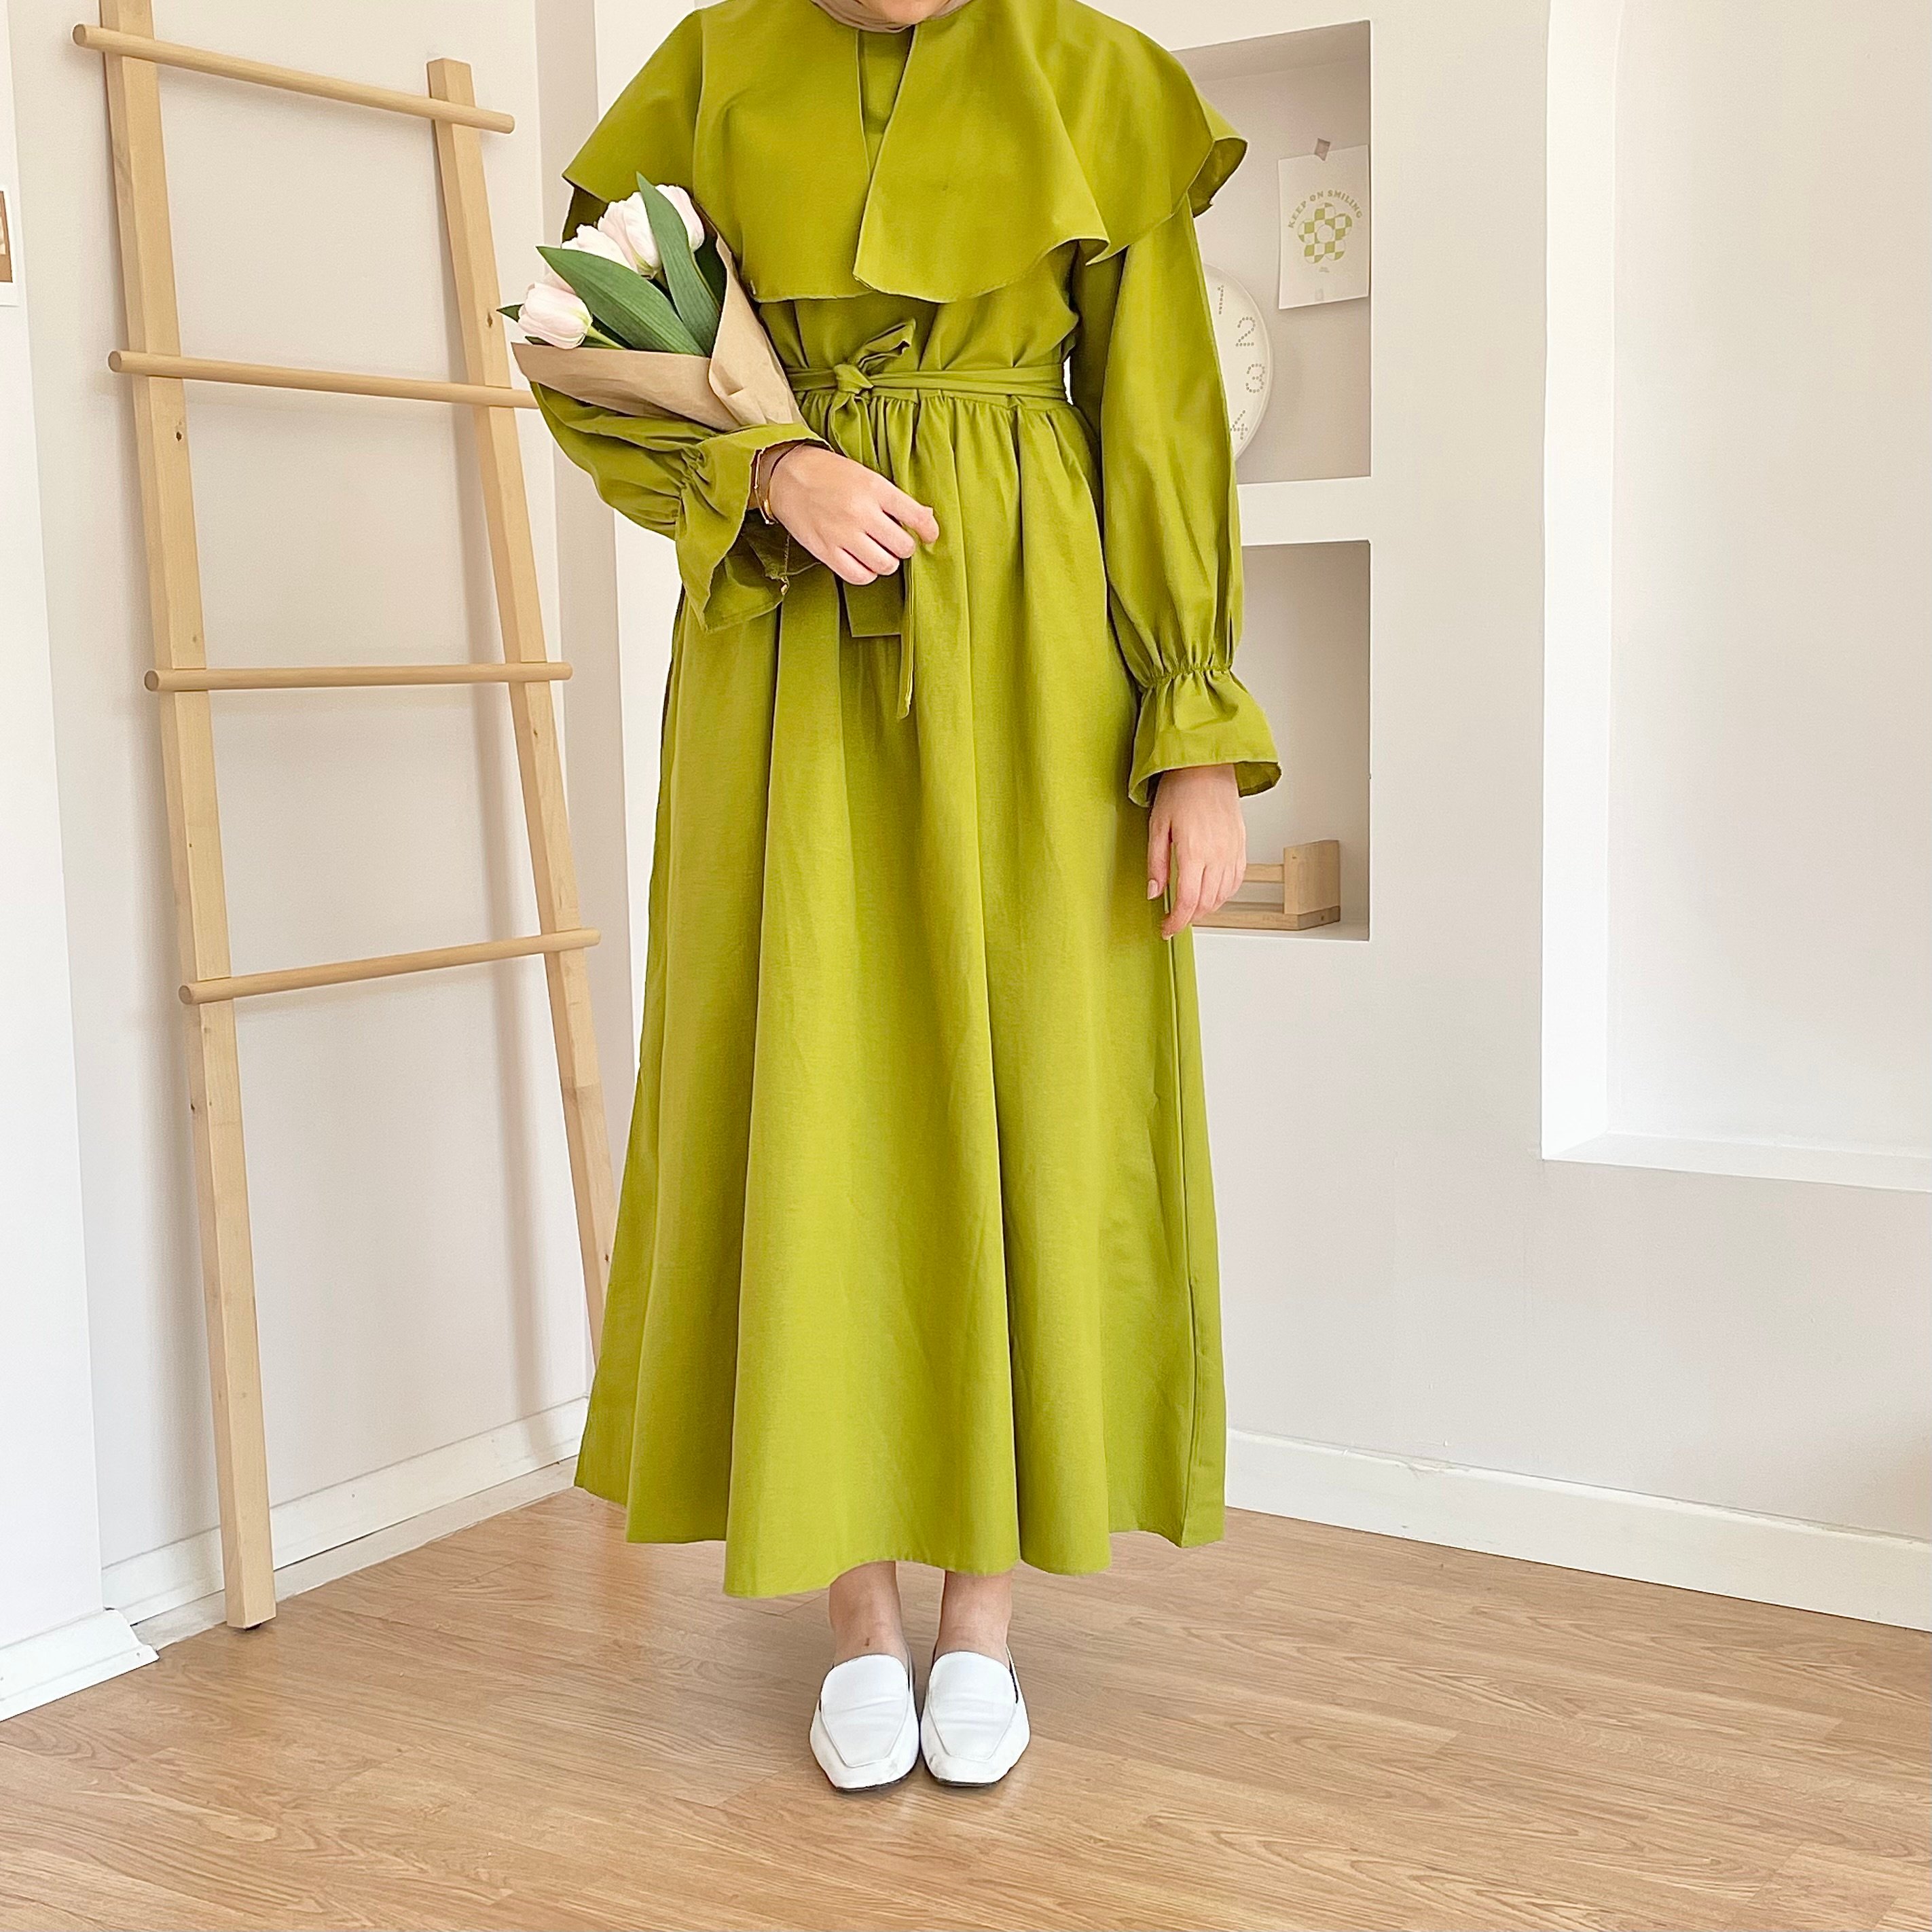 Pelerin Yaka Elbise - Fıstık Yeşili